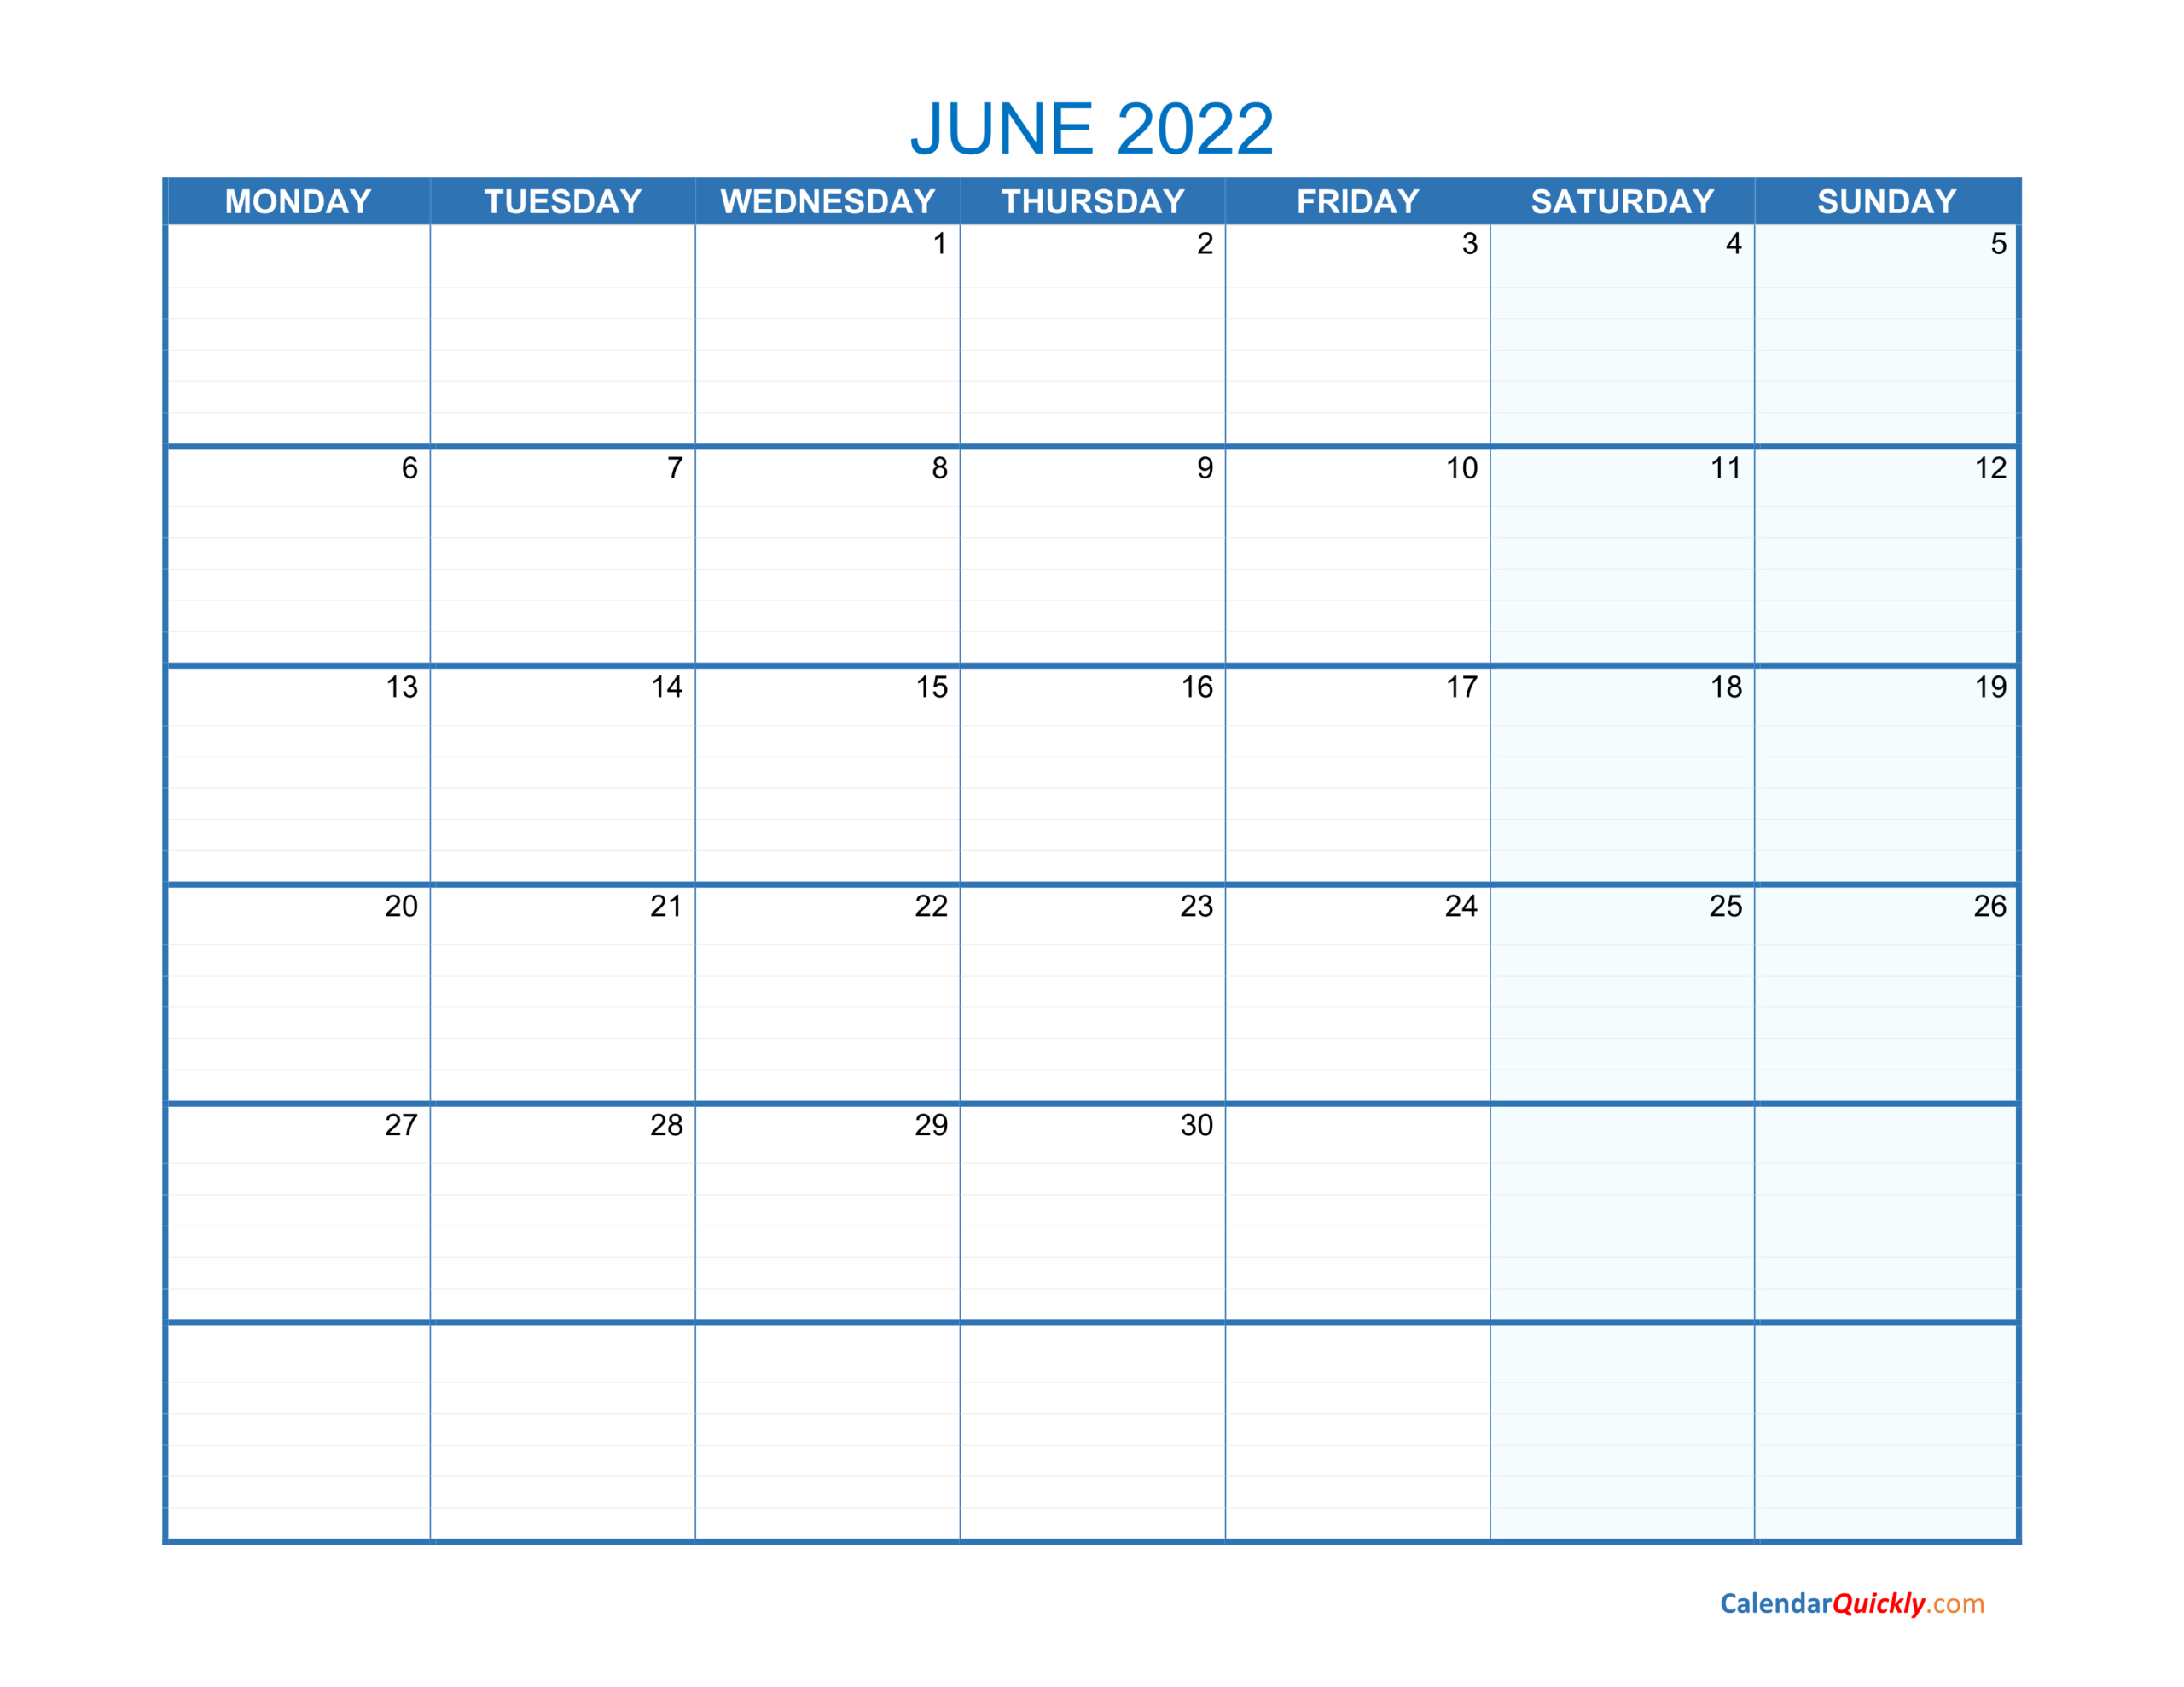 June Monday 2022 Blank Calendar | Calendar Quickly  Calendar Jan 2022 To June 2022